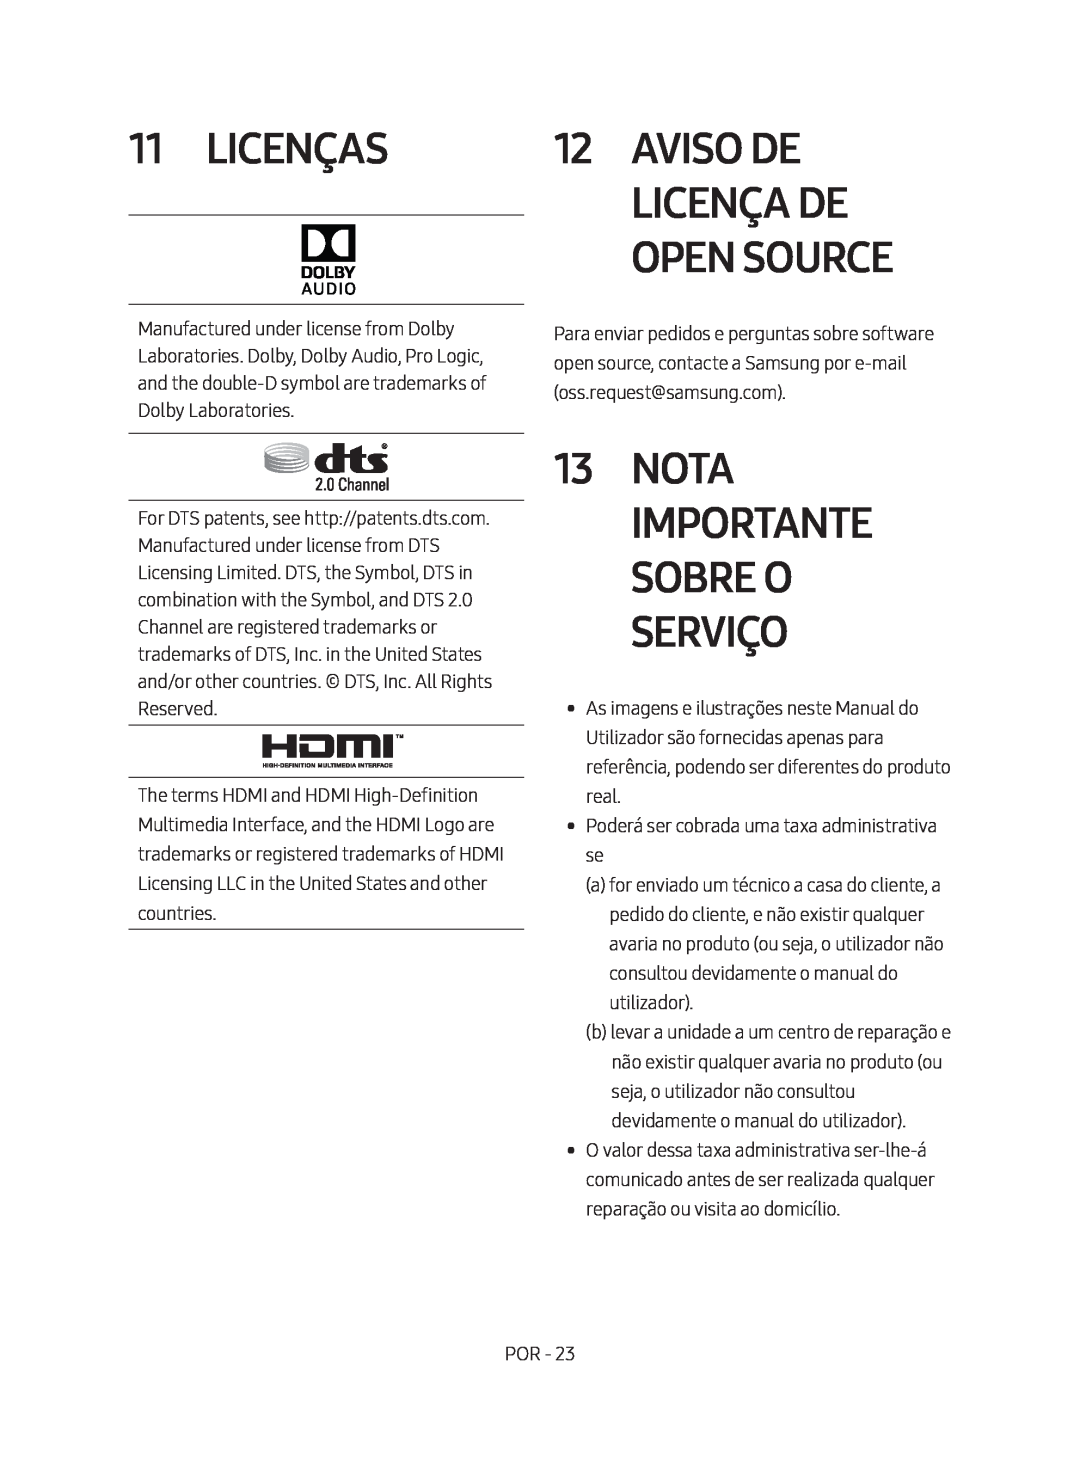 Samsung HW-M450/EN, HW-M450/ZG, HW-M450/ZF manual Licenças, Nota Importante Sobre O Serviço, Aviso De Licença De Open Source 